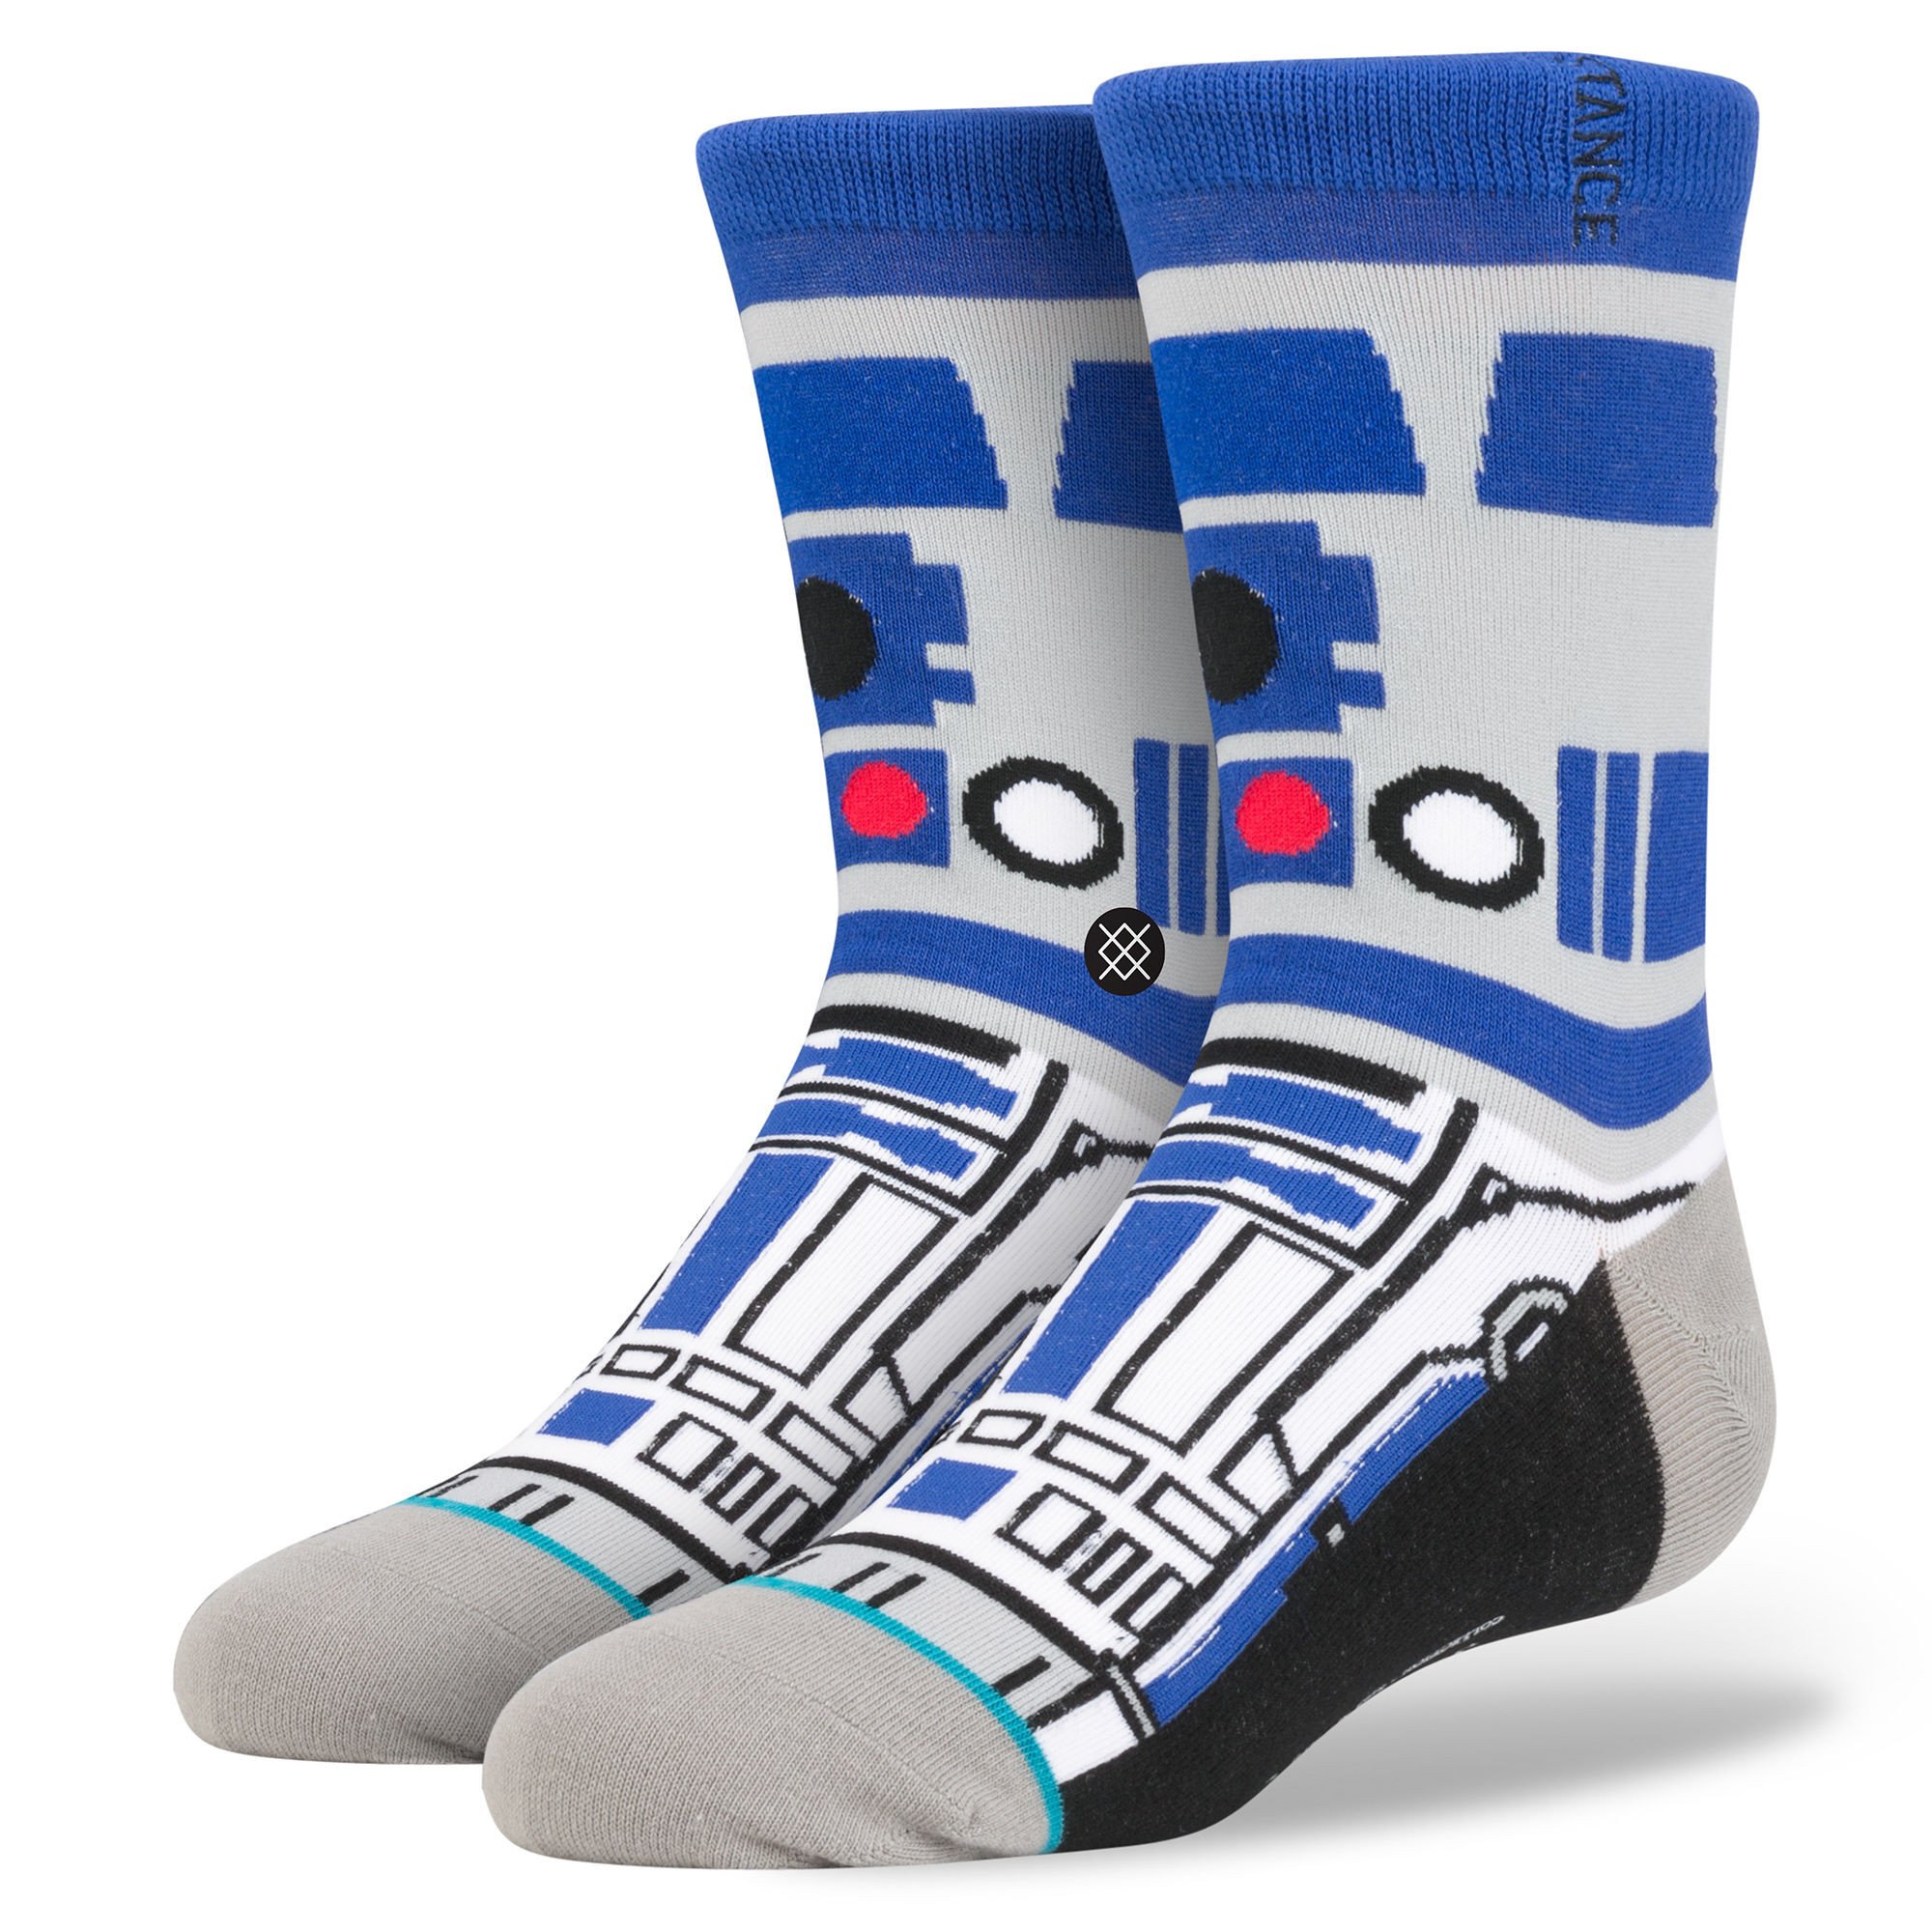 R2d2 Star Wars Socks